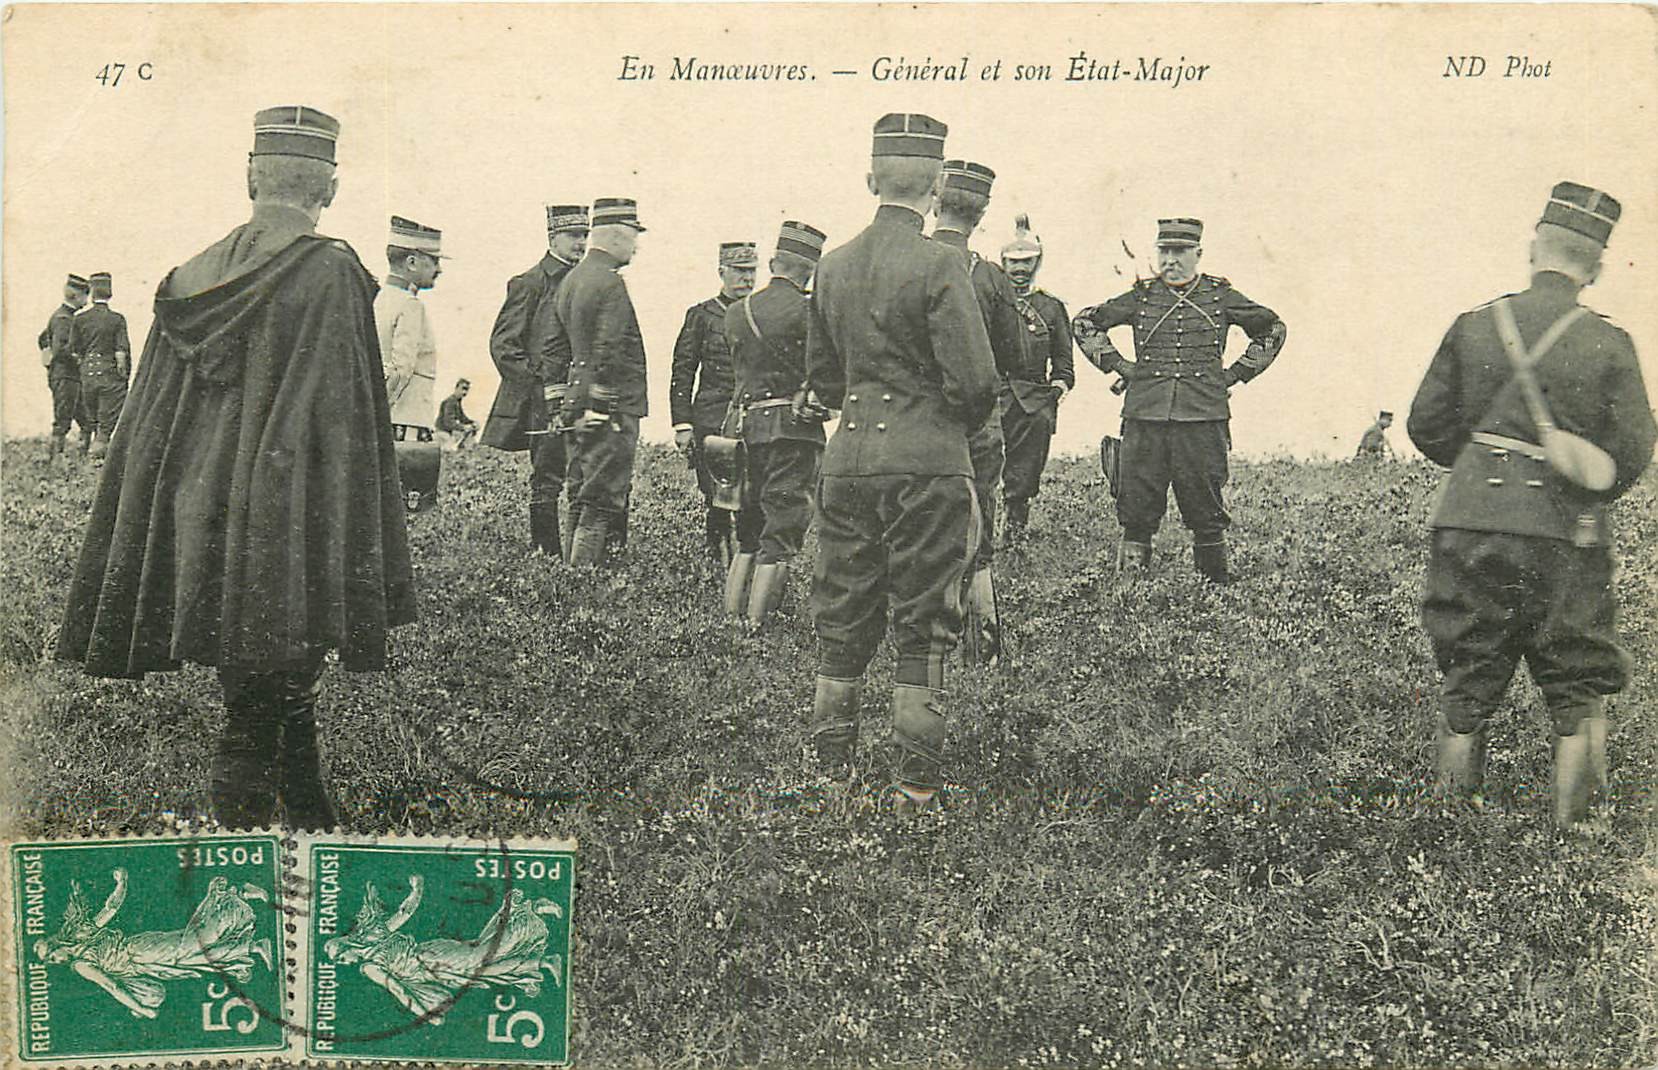 WW MILITAIRES. Général et son Etat-Major en Manoeuvres 1917